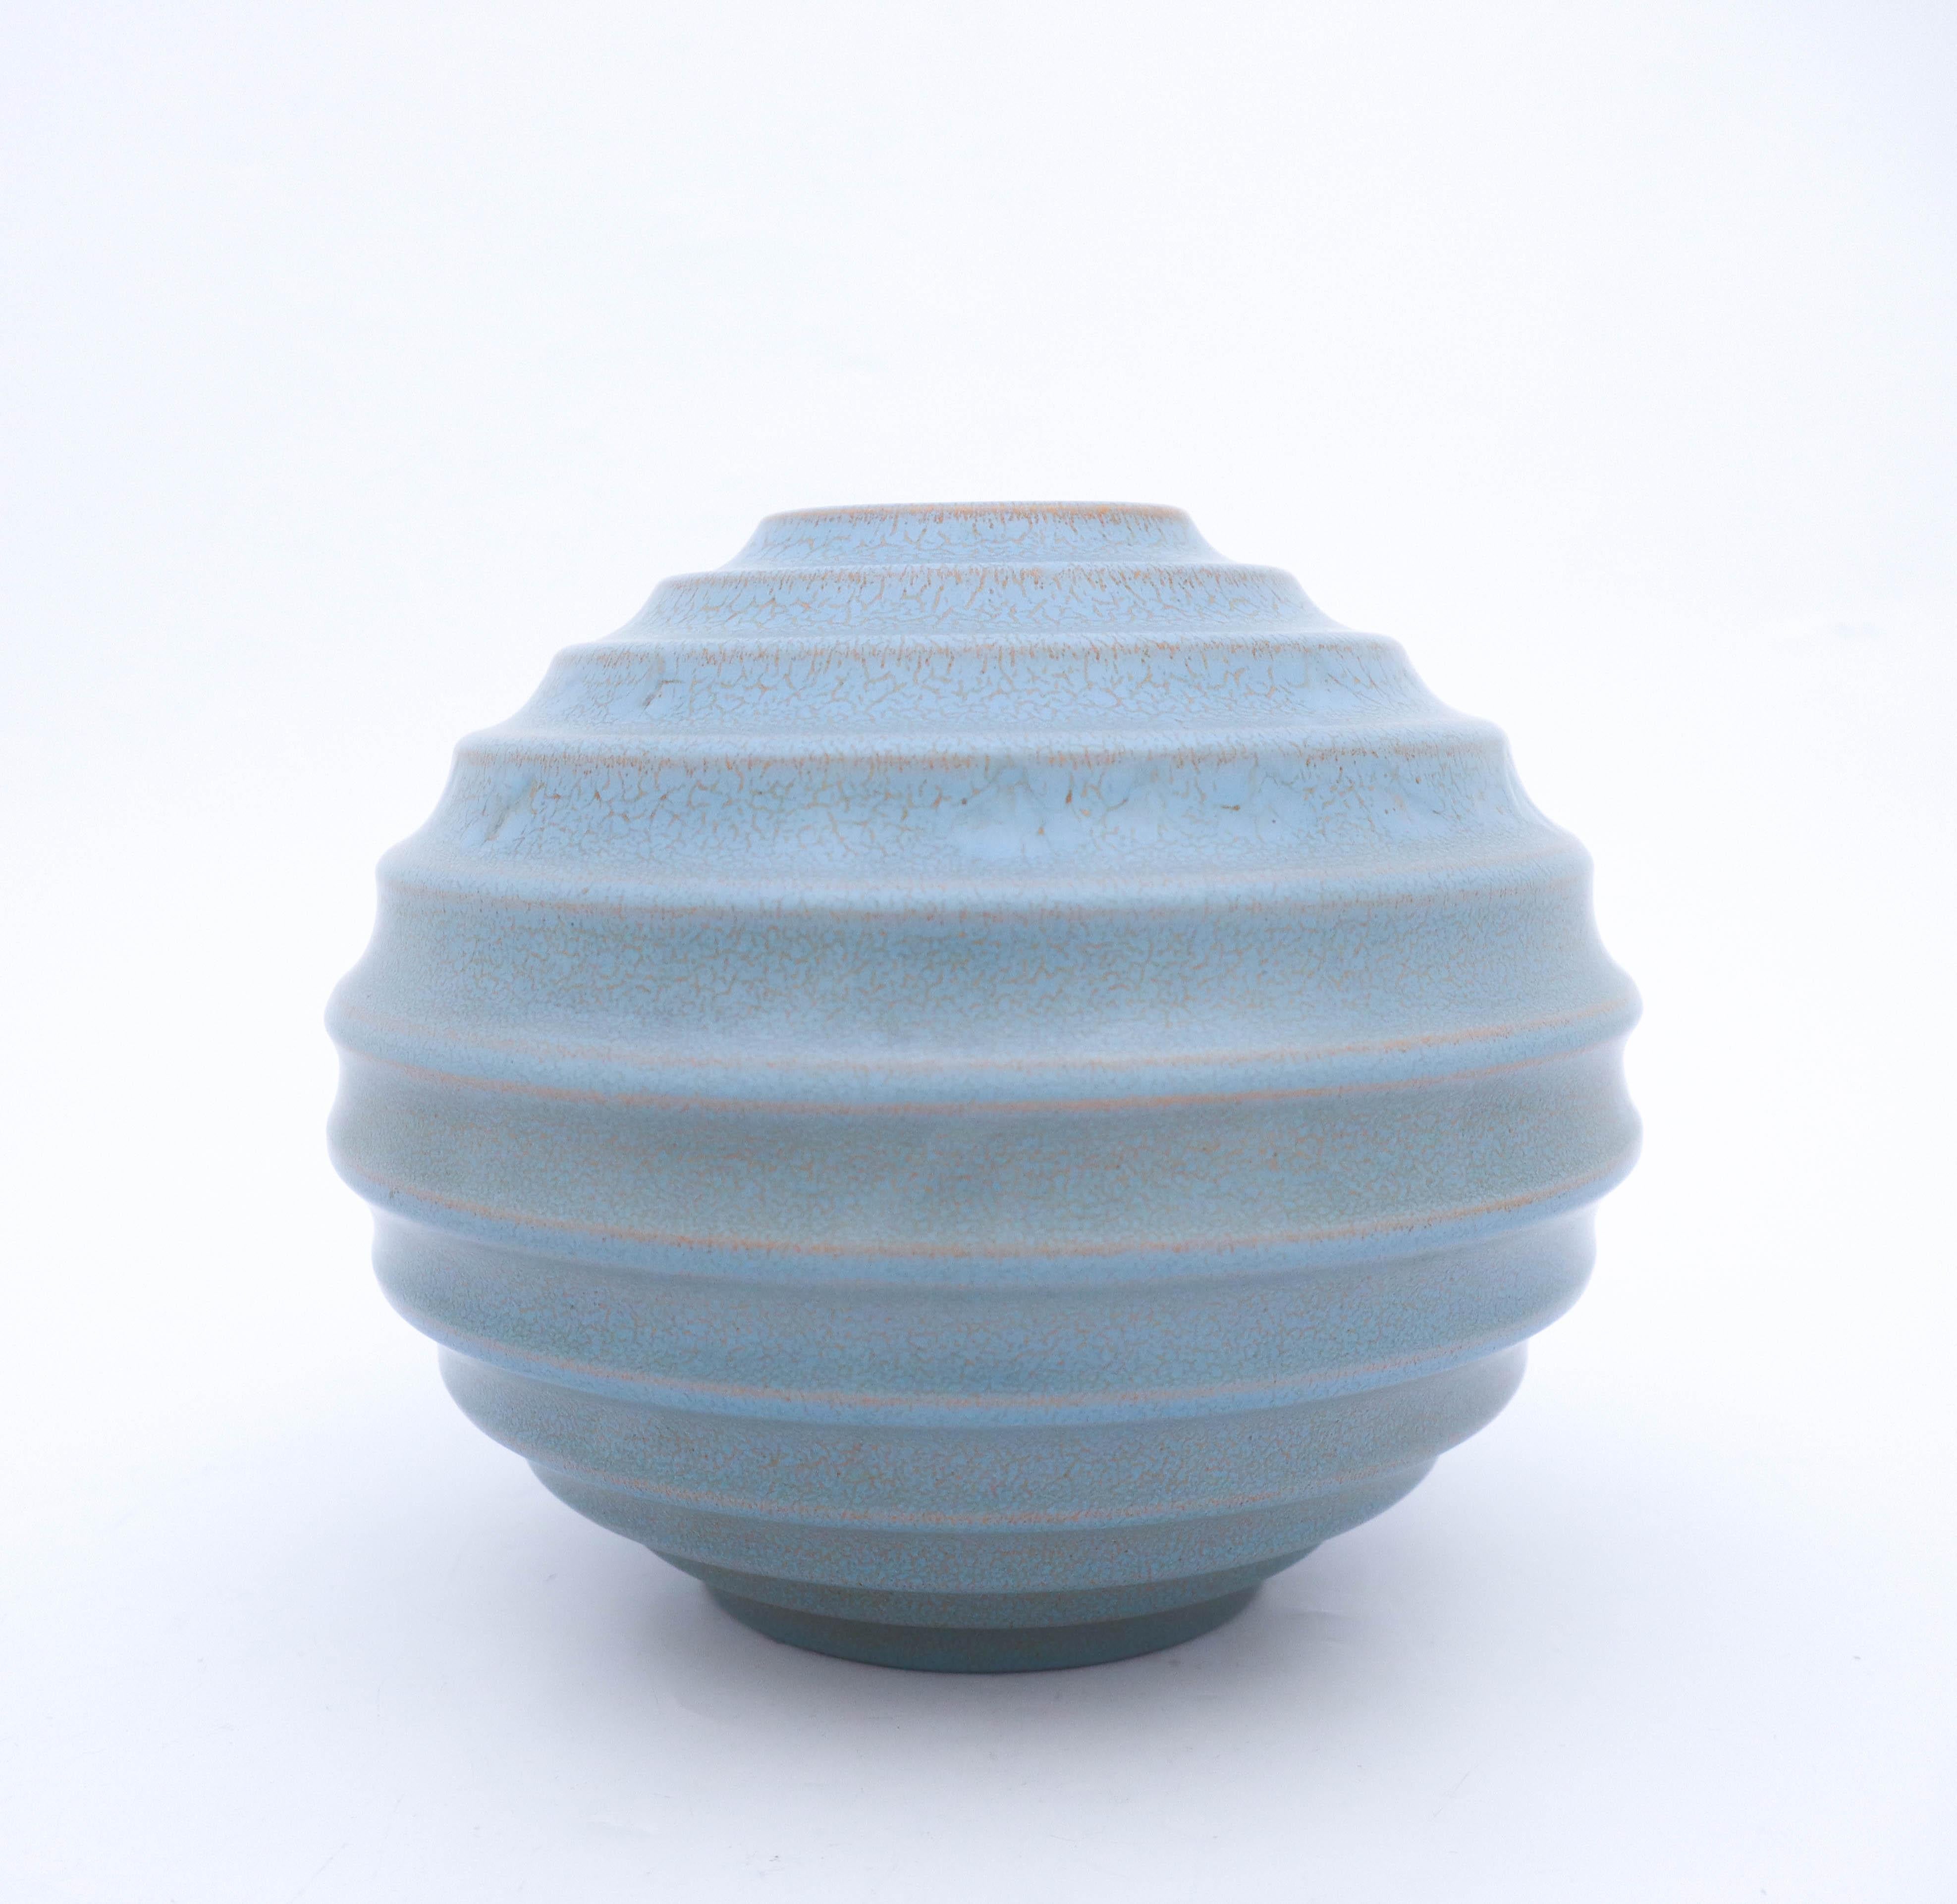 Un vase globulaire conçu par Ewald Dahlskog chez Bo Fajans à Gefle dans les années 1930. Ce vase a été présenté pour la première fois à l'exposition de Stockholm en 1930, qui a marqué le début du fonctionnalisme. Le vase a une belle glaçure appelée